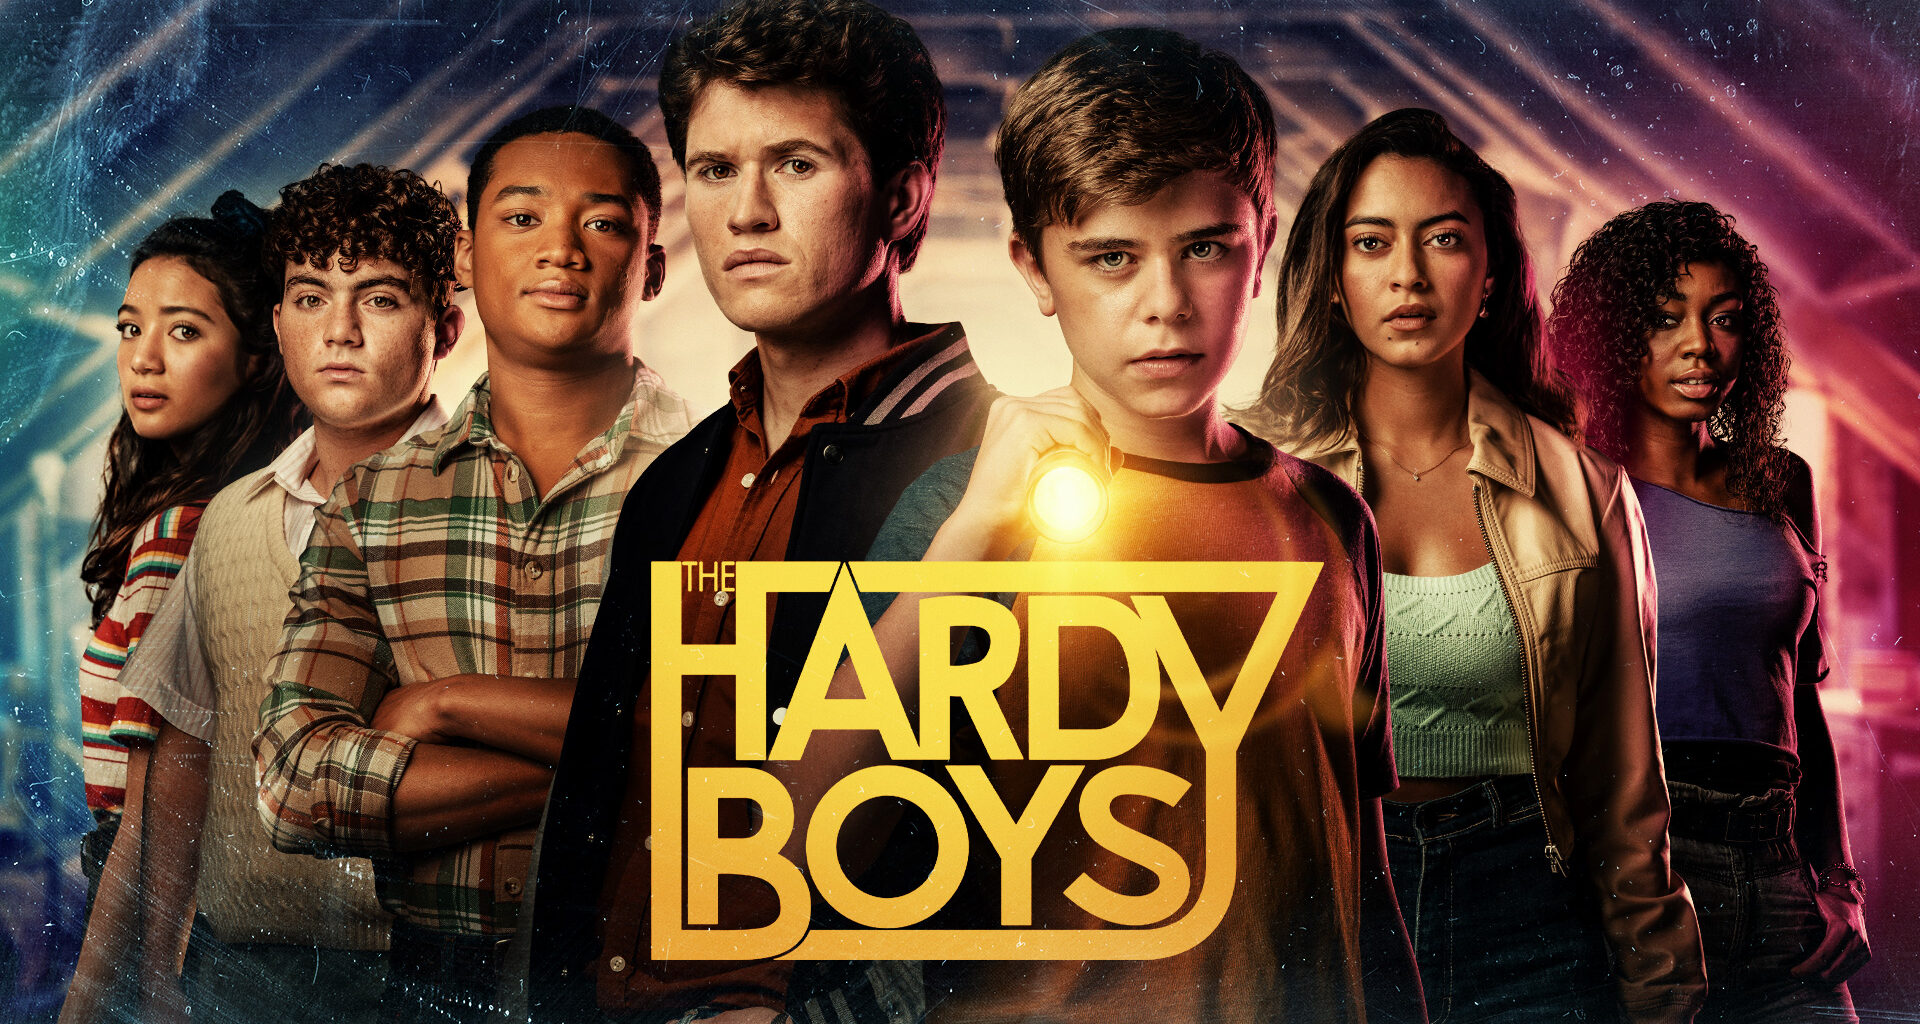 The Hardy Boys Season 2 Episode 2 Release Date